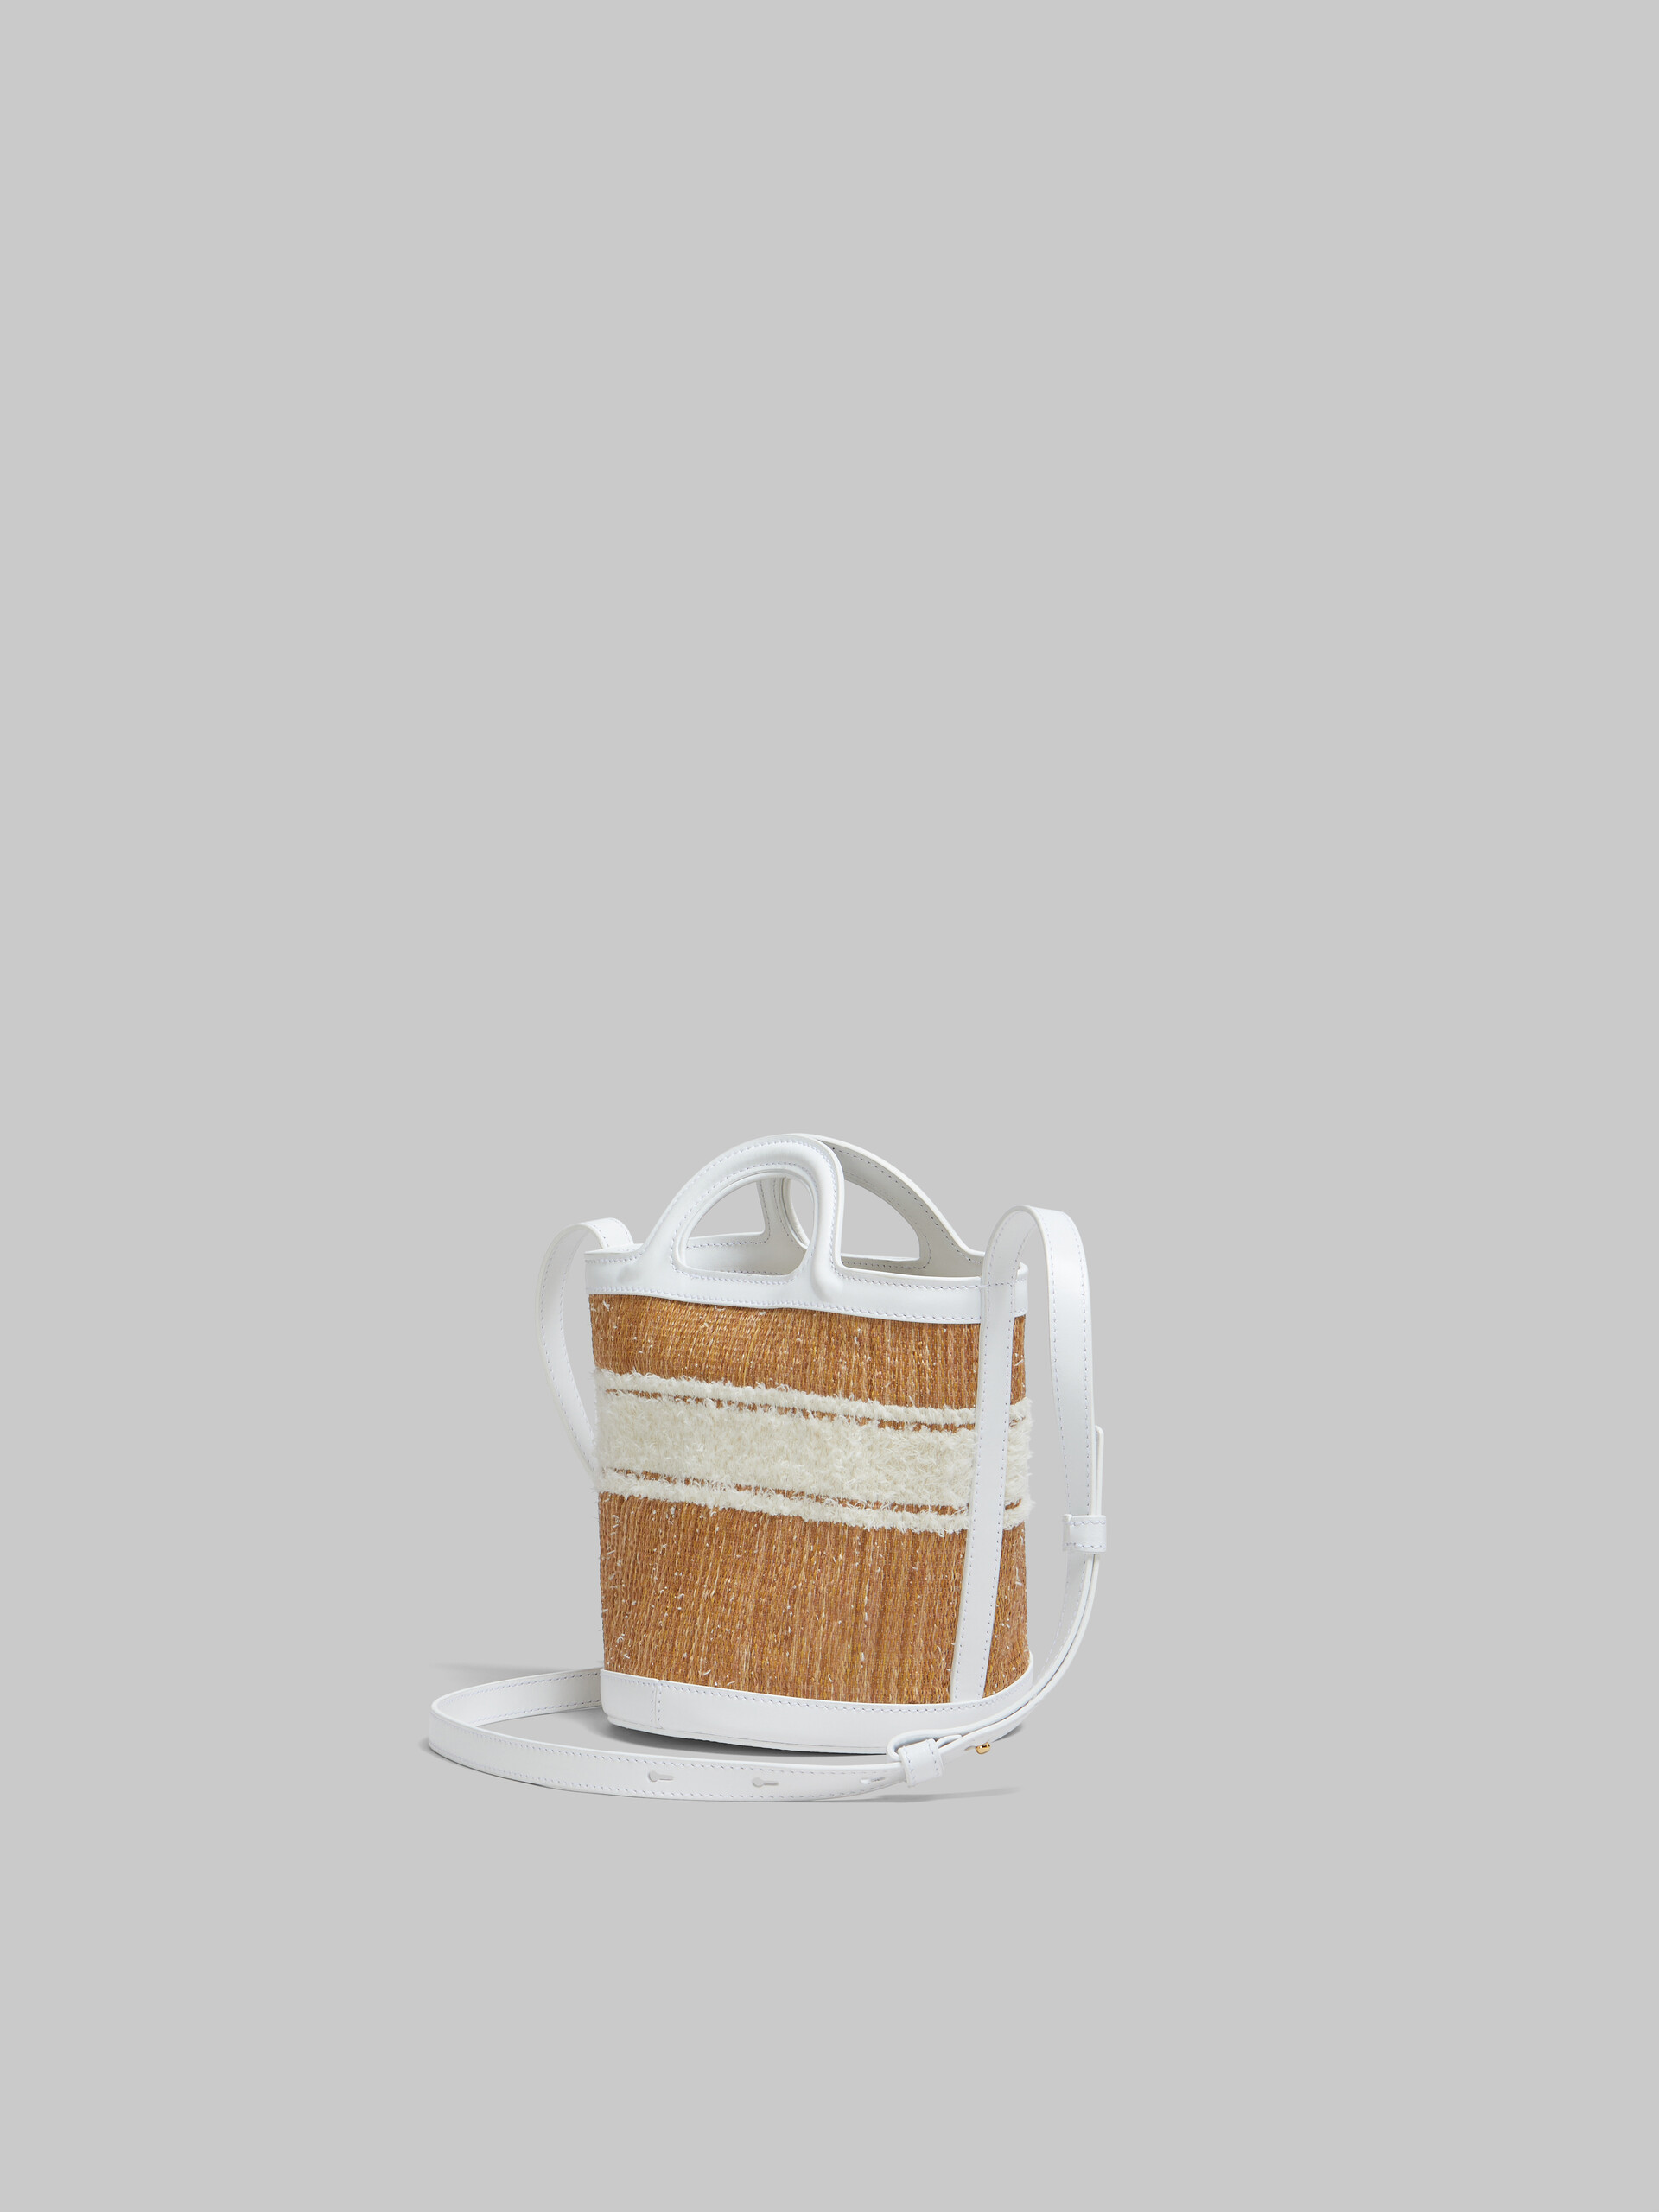 Tropicalia Bag piccola a secchiello in pelle bianca con logo trapuntato - Borse a spalla - Image 3